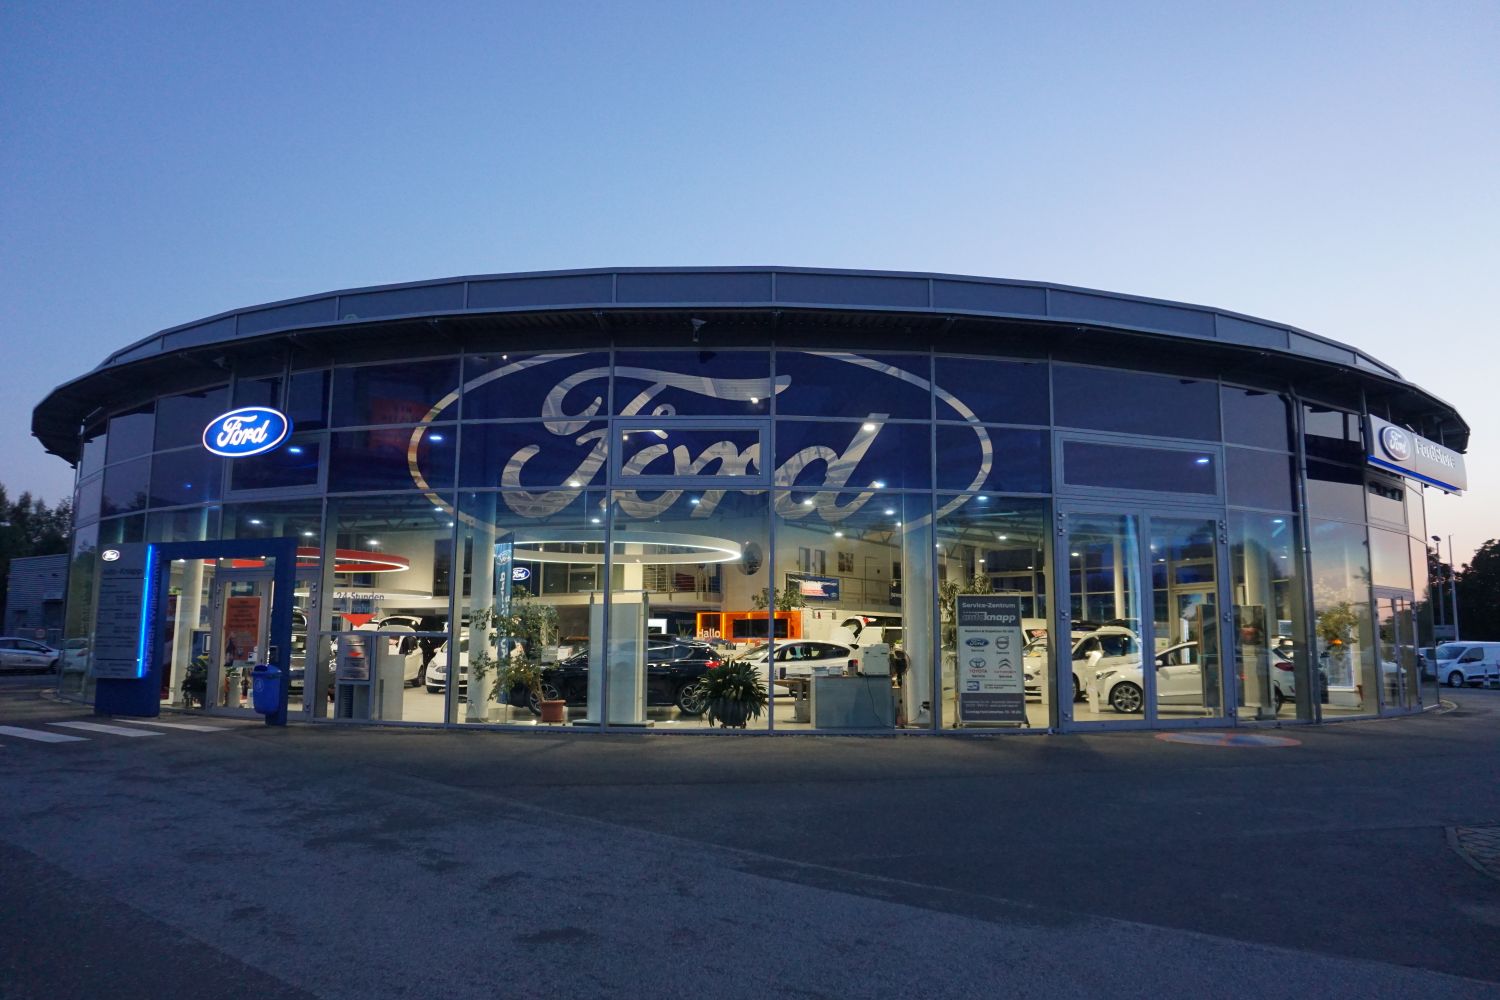 Ford Focus bei Auto Knapp GmbH in Weinheim